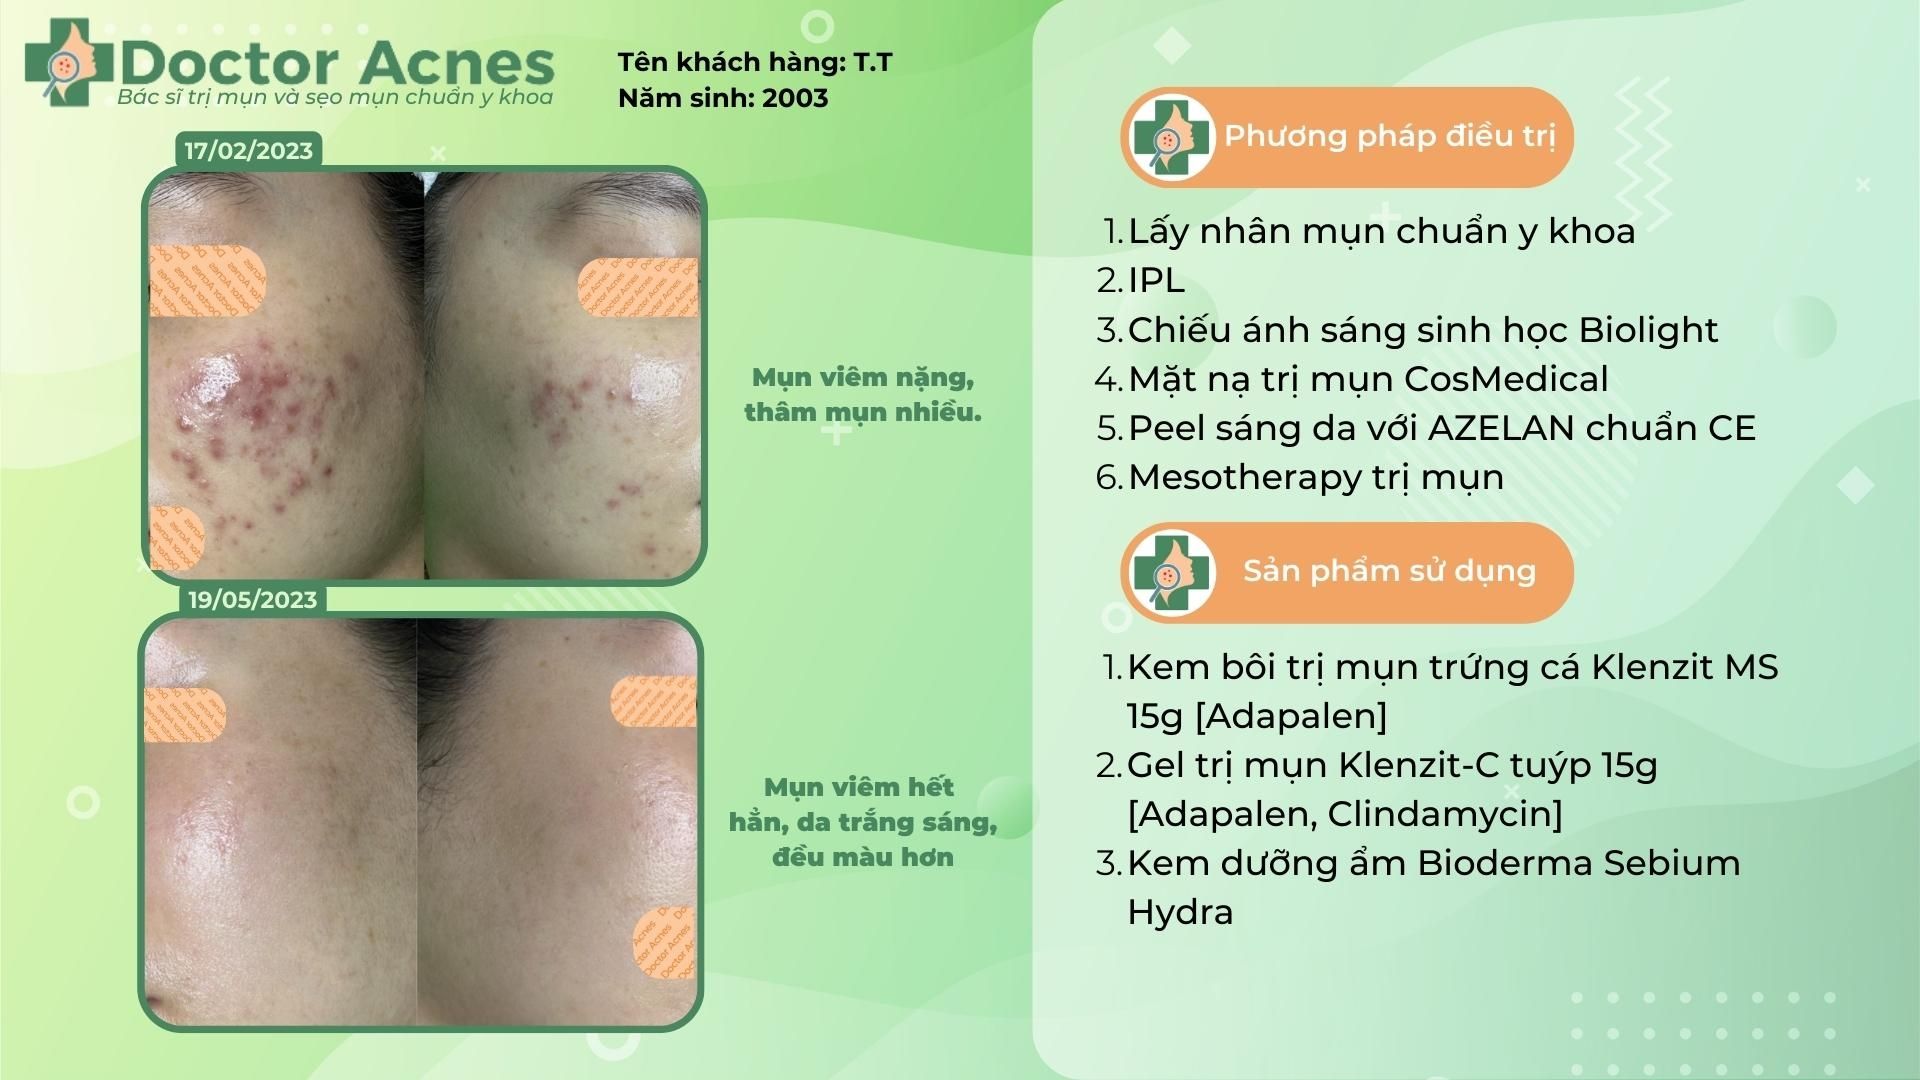 ca lâm sàng điều trị mụn thành công tại doctor acnes